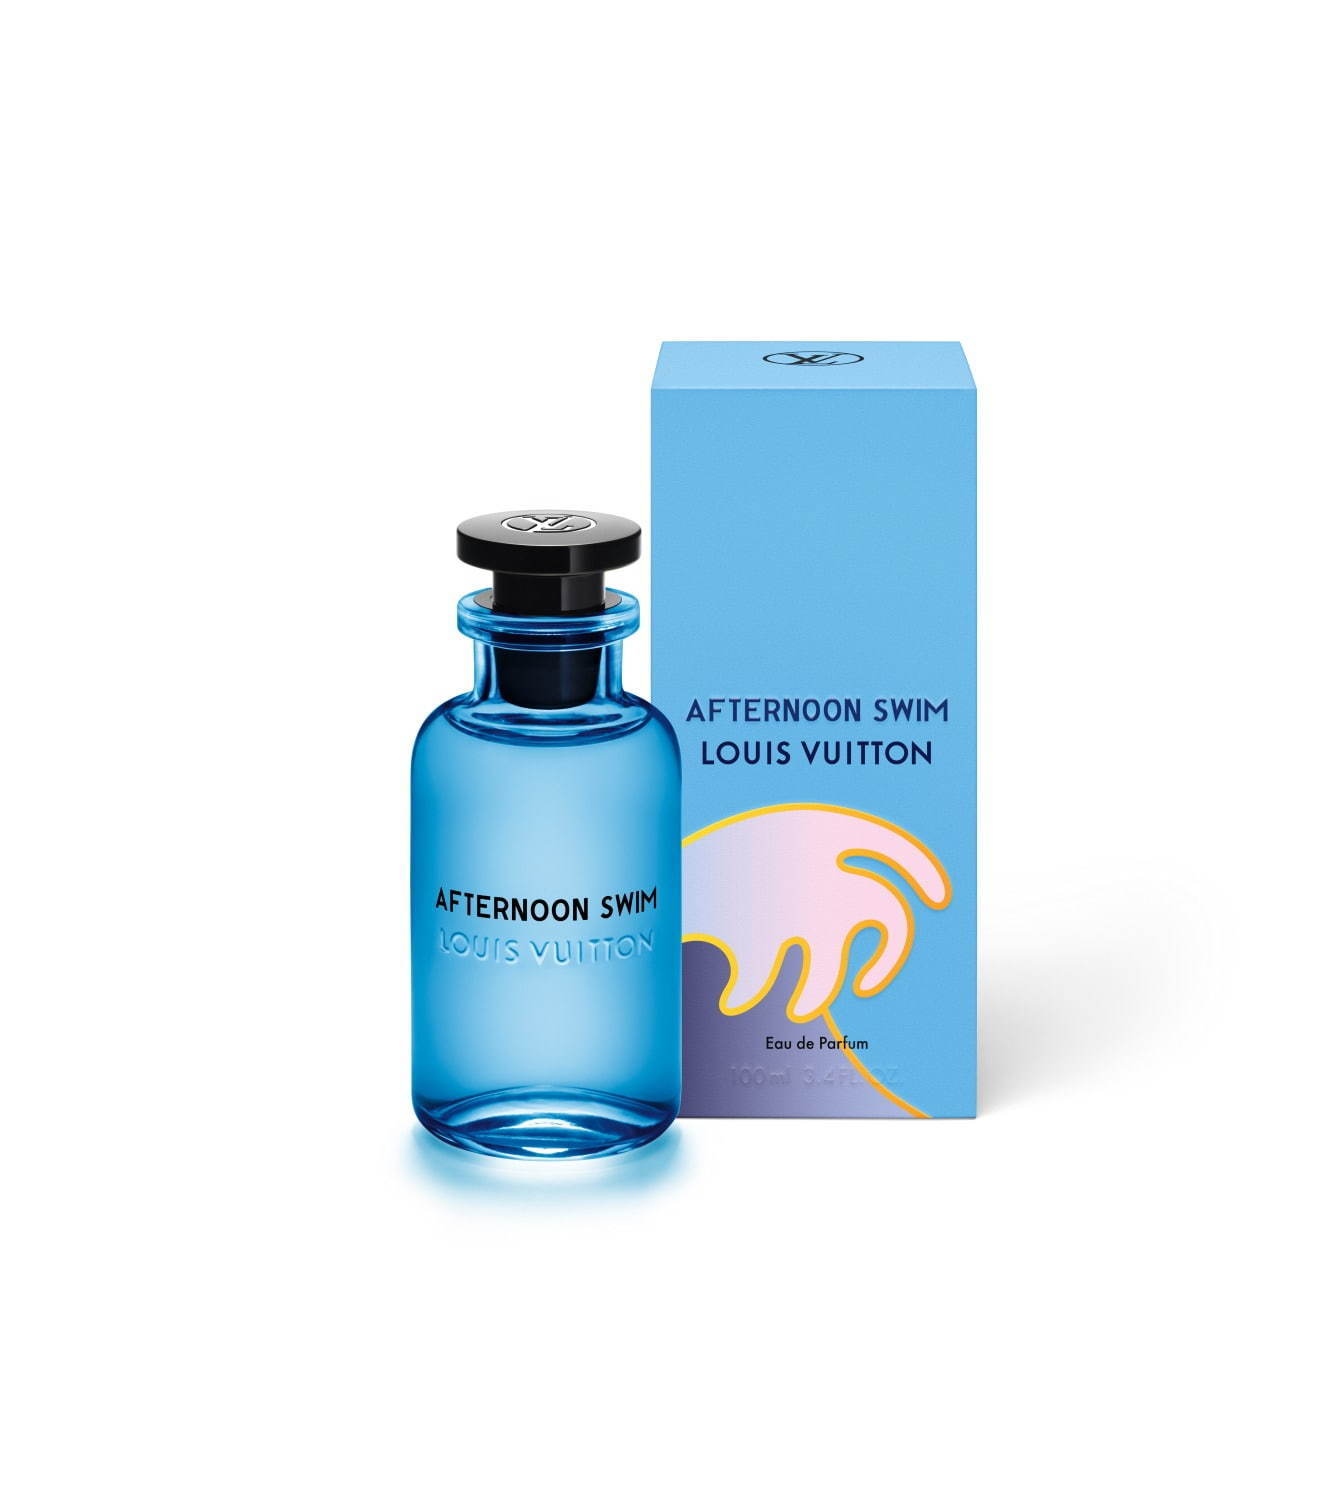 Afternoon Swim Louis Vuitton perfume - una nuevo fragancia para Hombres y Mujeres 2019